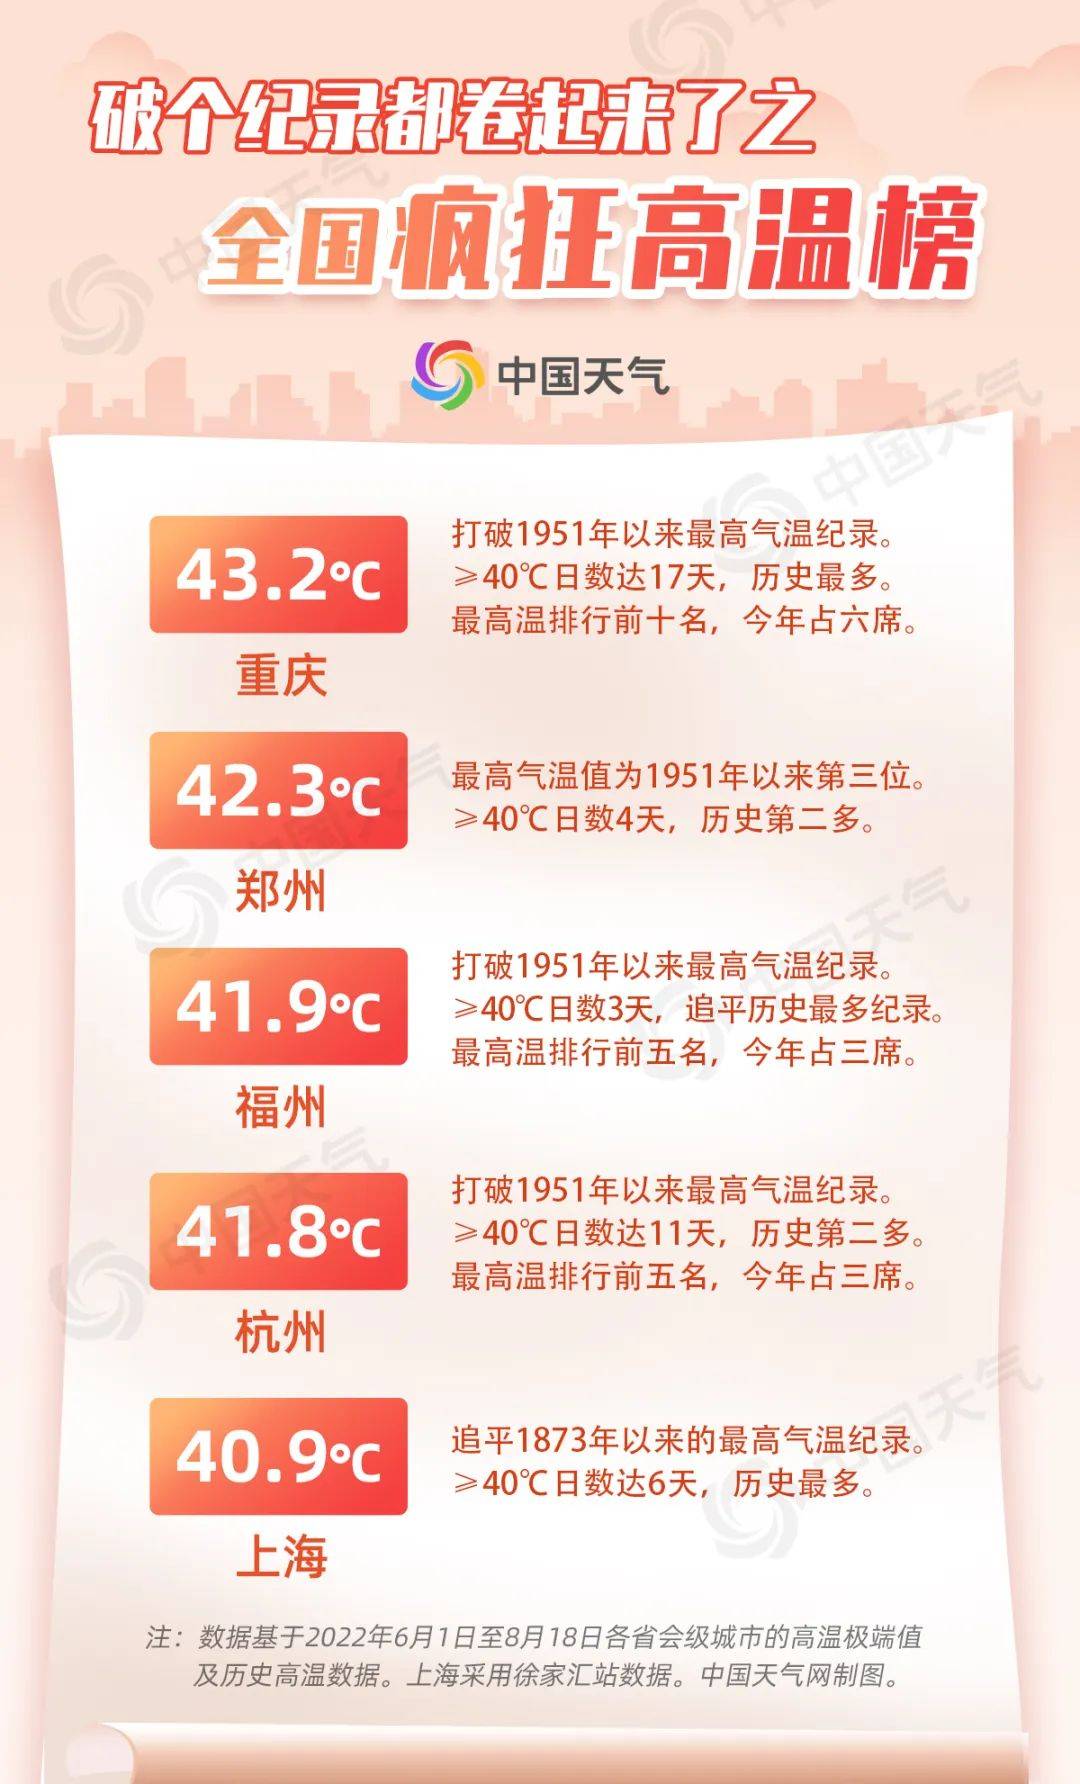 7天超过40℃ 上海再度刷新极端酷热天数新纪录